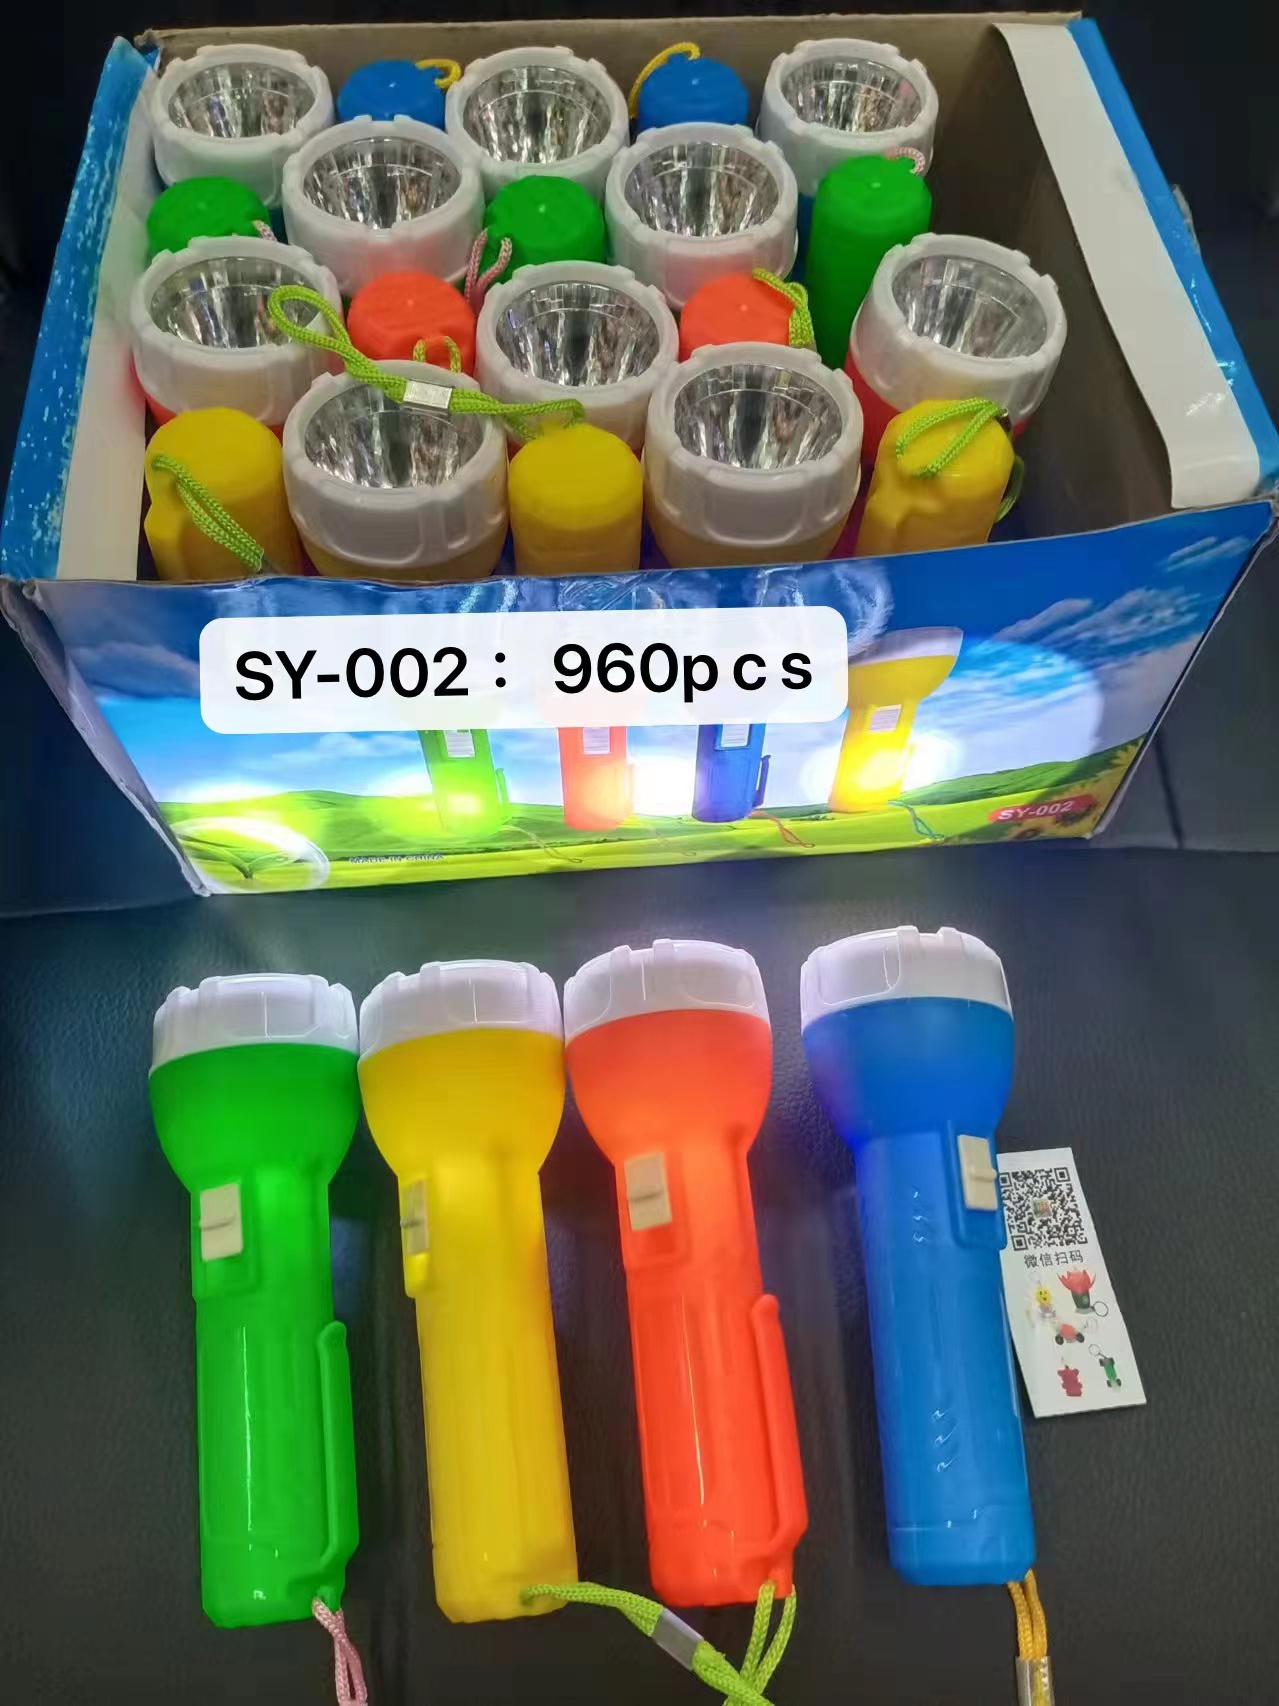 白光手电筒 LED手电筒 塑料纽扣电池手电筒SY-002款